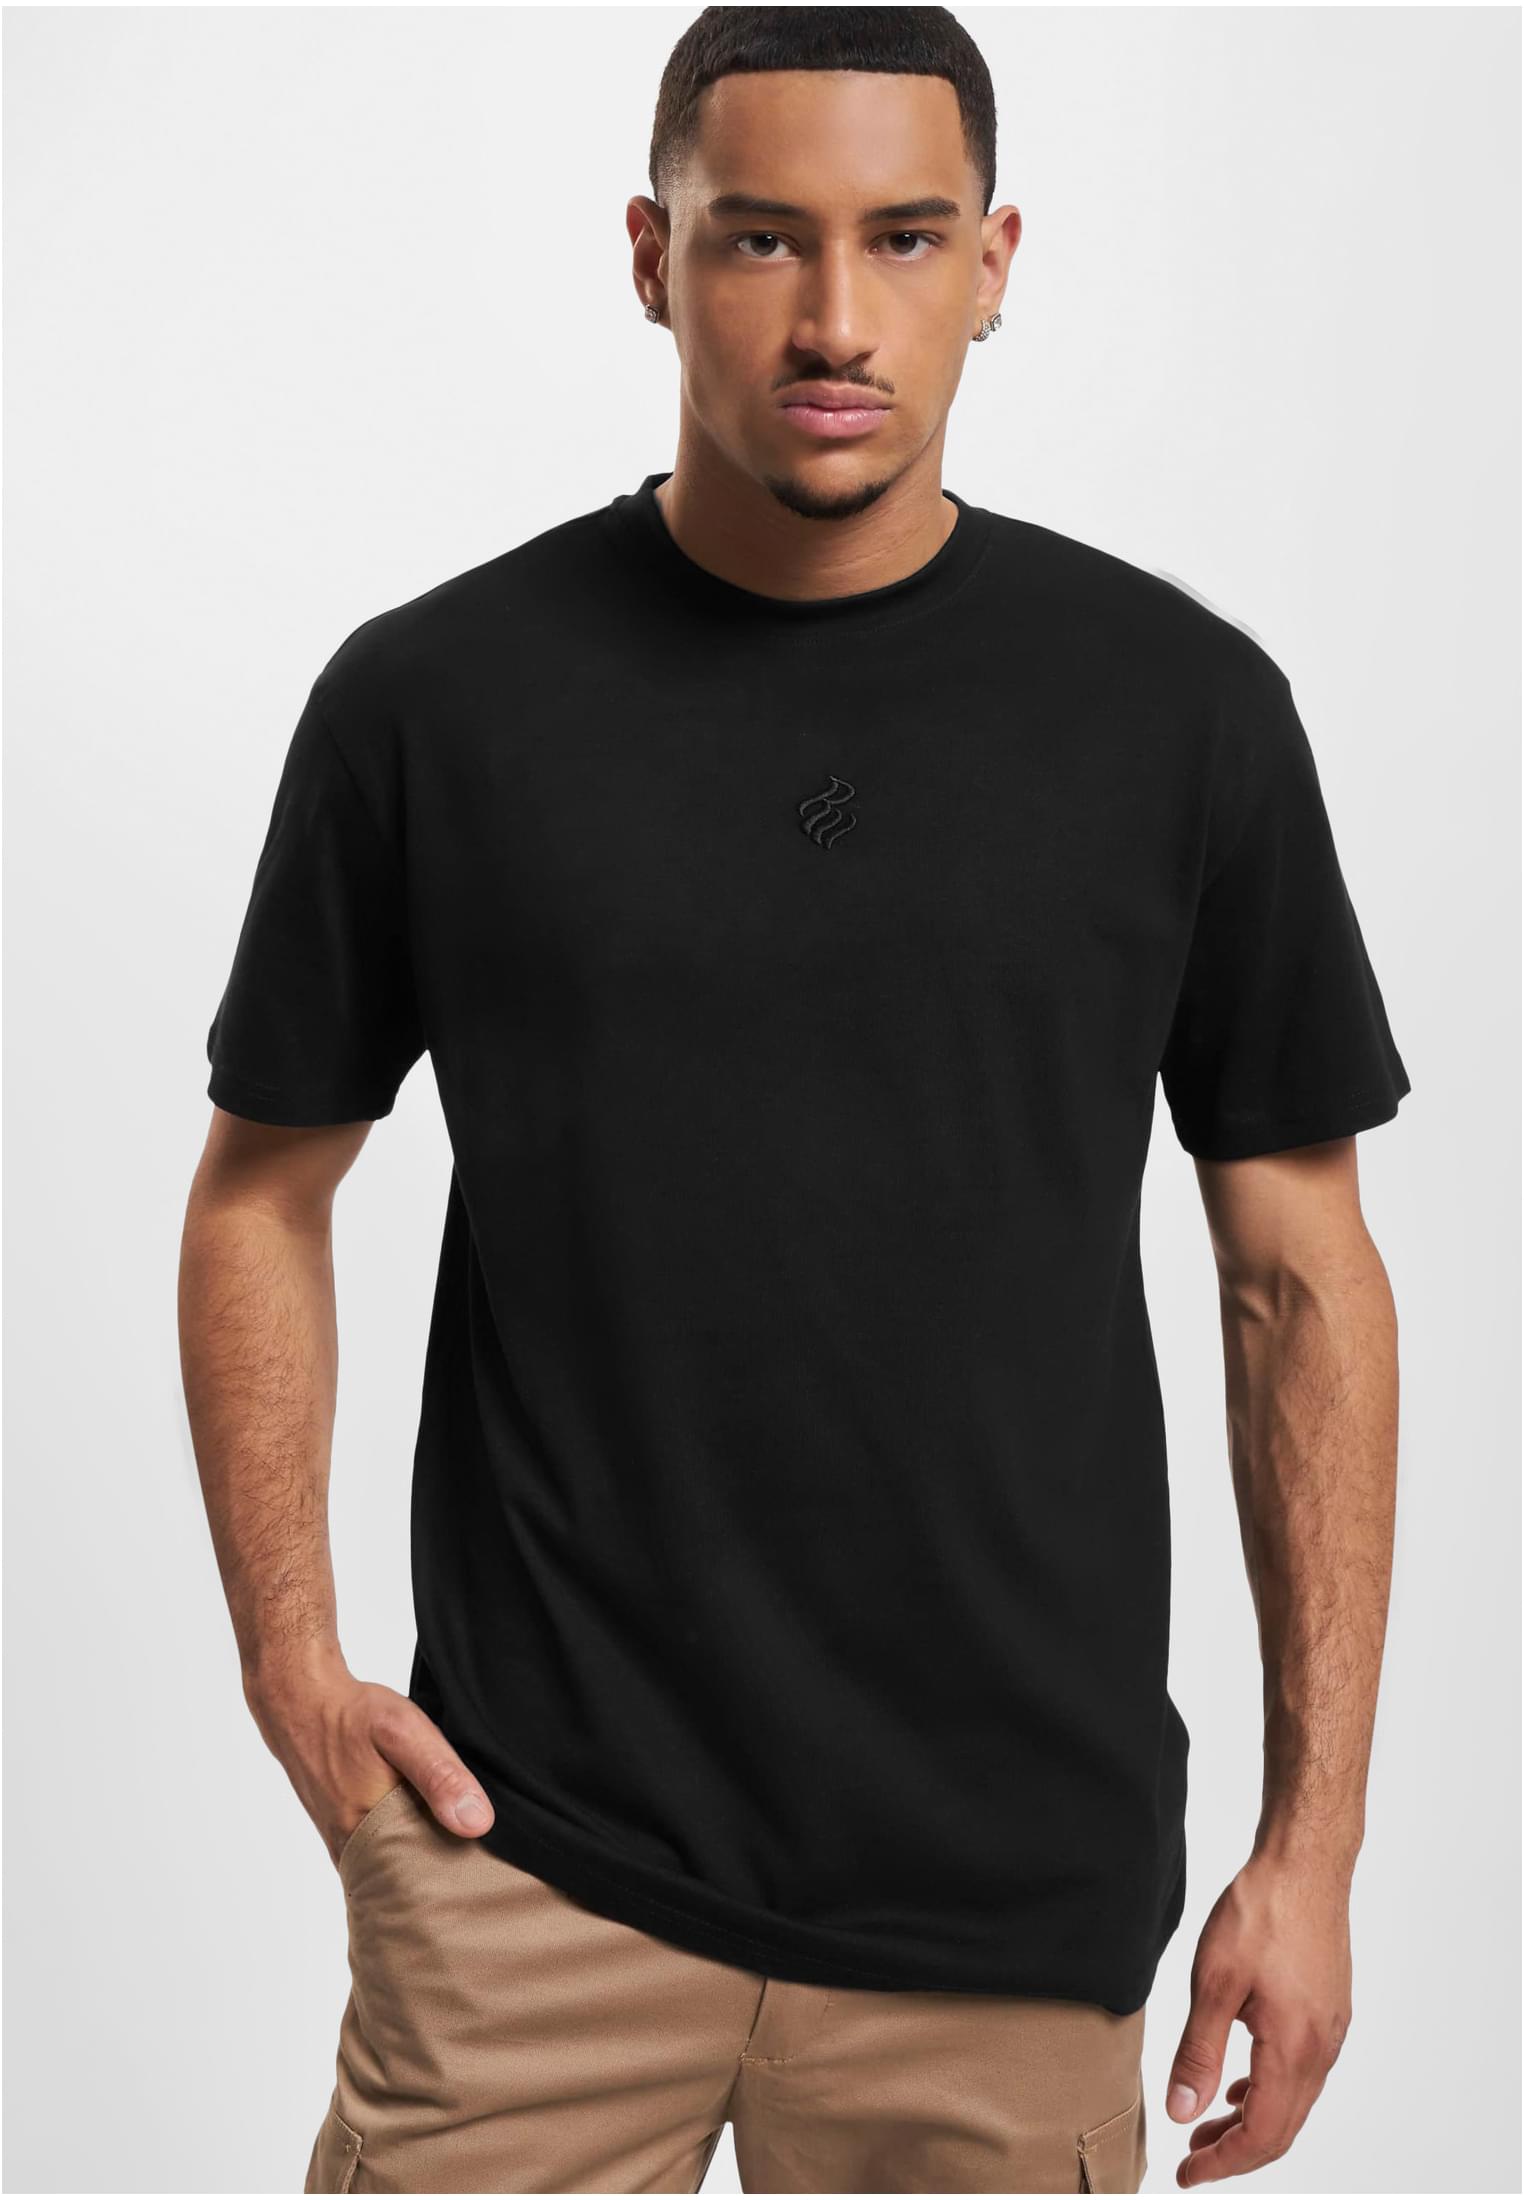 Men's Rocawear Nonchalance T-shirt - black